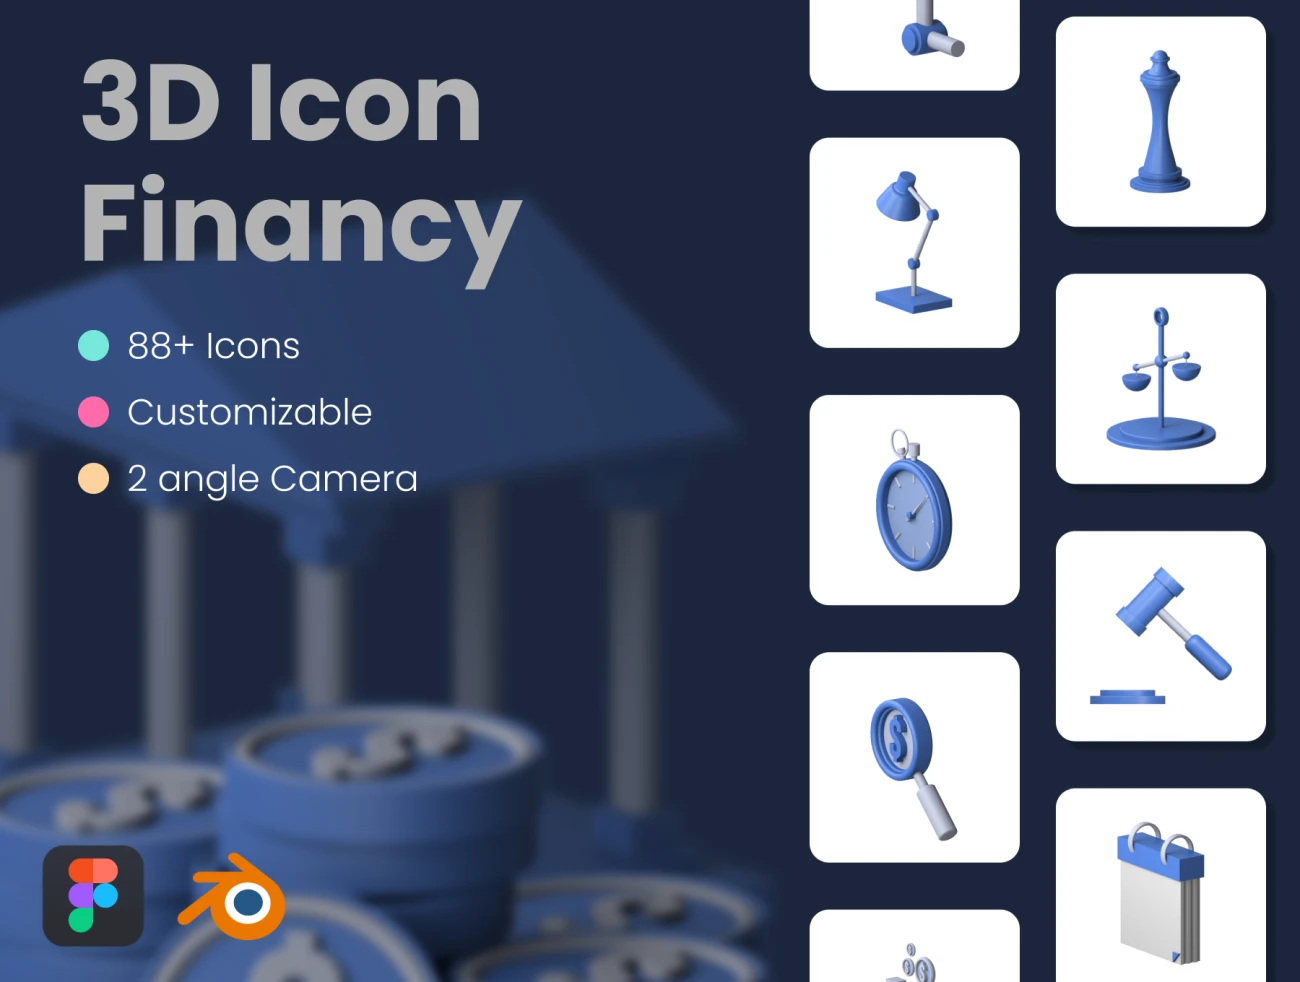 80个商业金融可自定义2角度3D图标合集 3D Financy Icon插图1